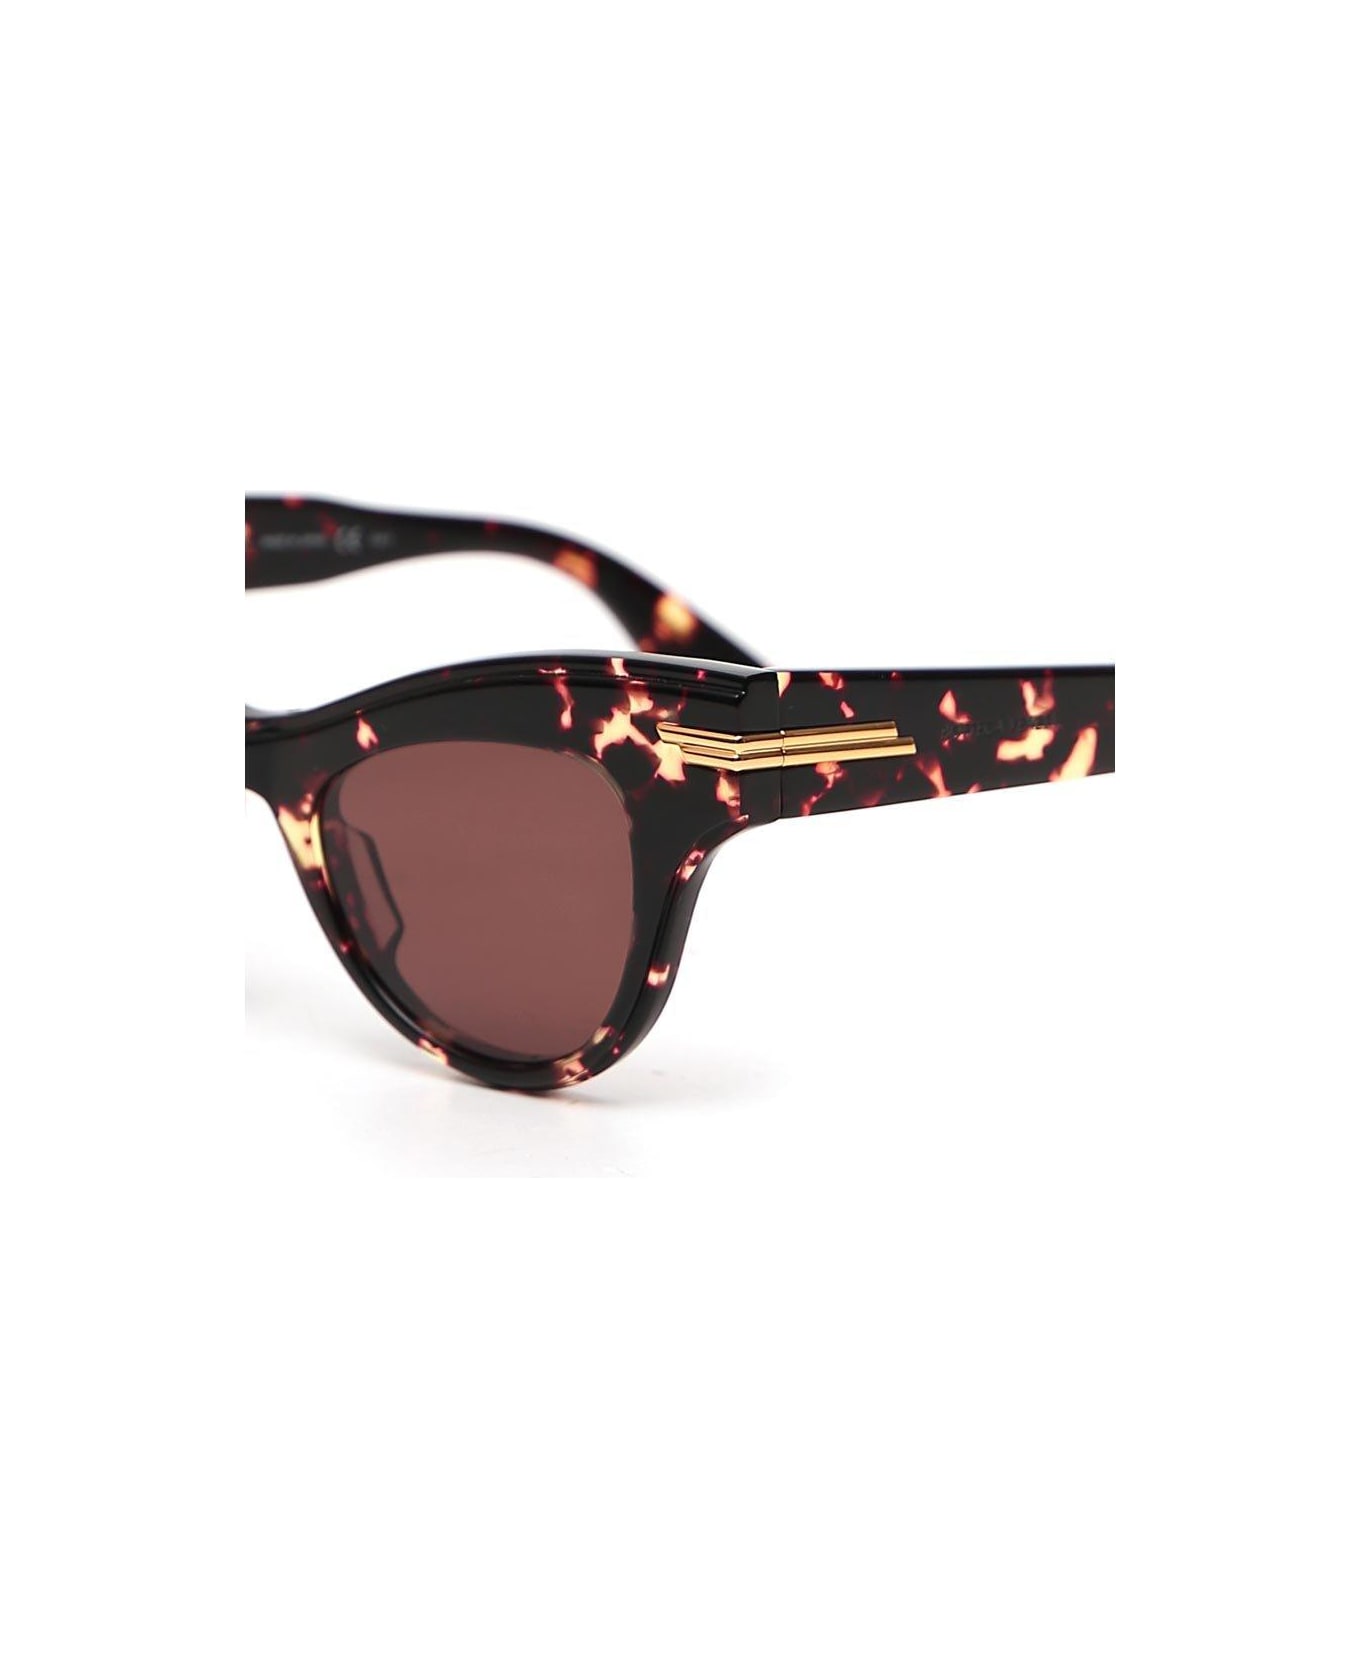 Bottega Veneta Cat-eye Frame Sunglasses - BROWN